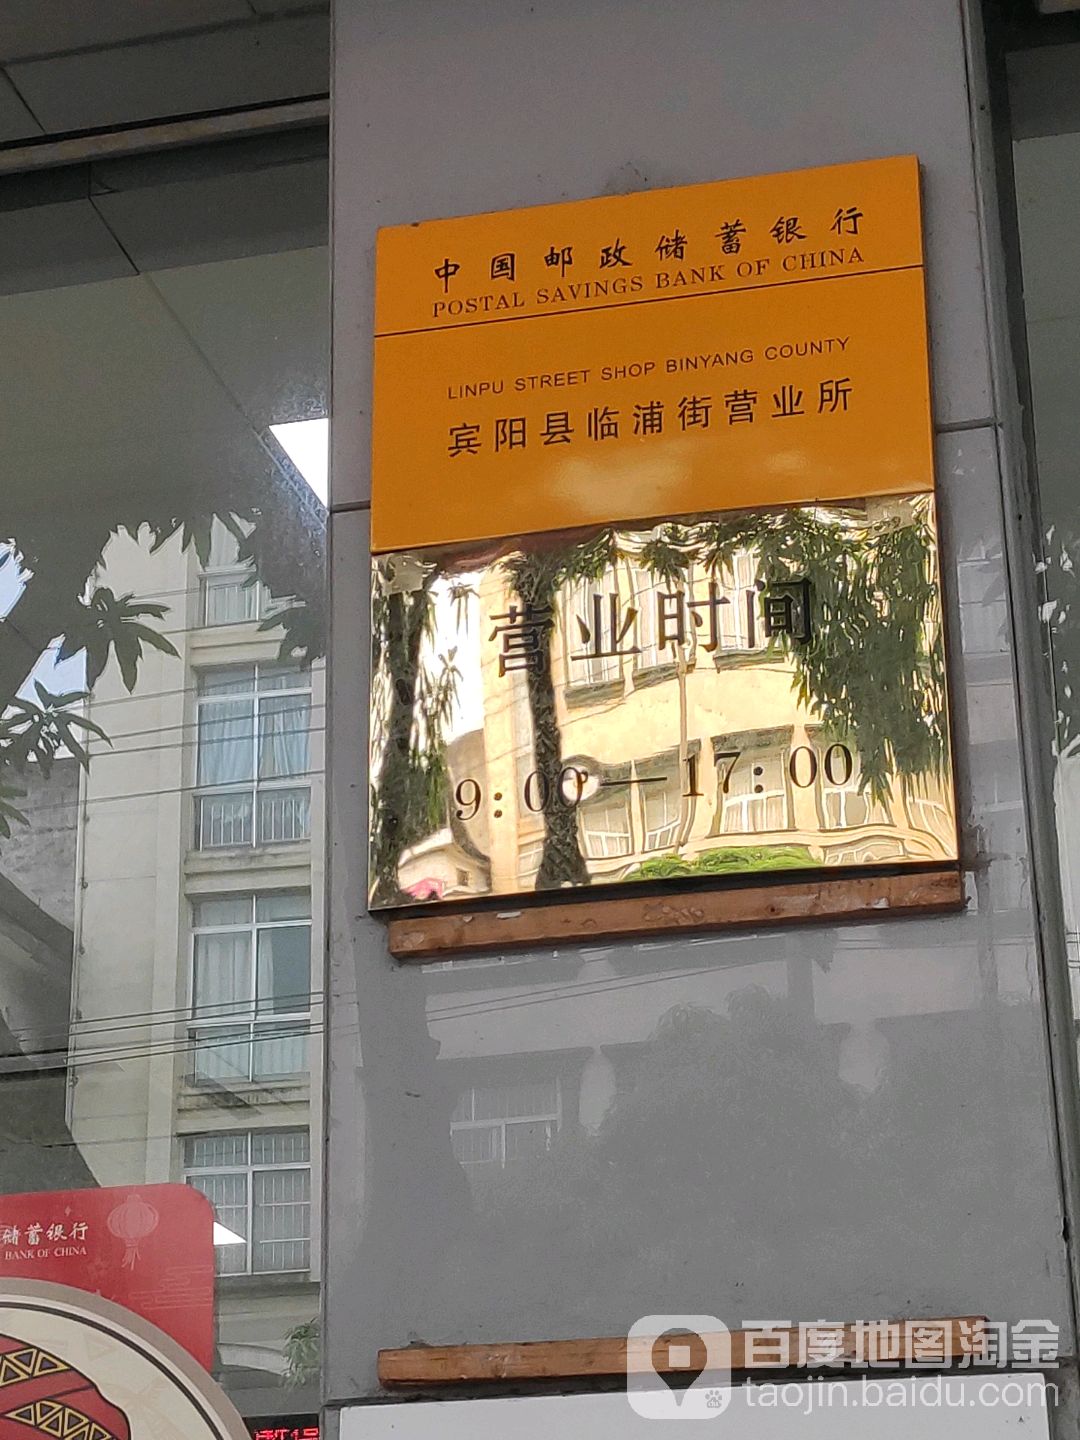 中國郵政儲蓄銀行24小時自助銀行(臨浦街支行)